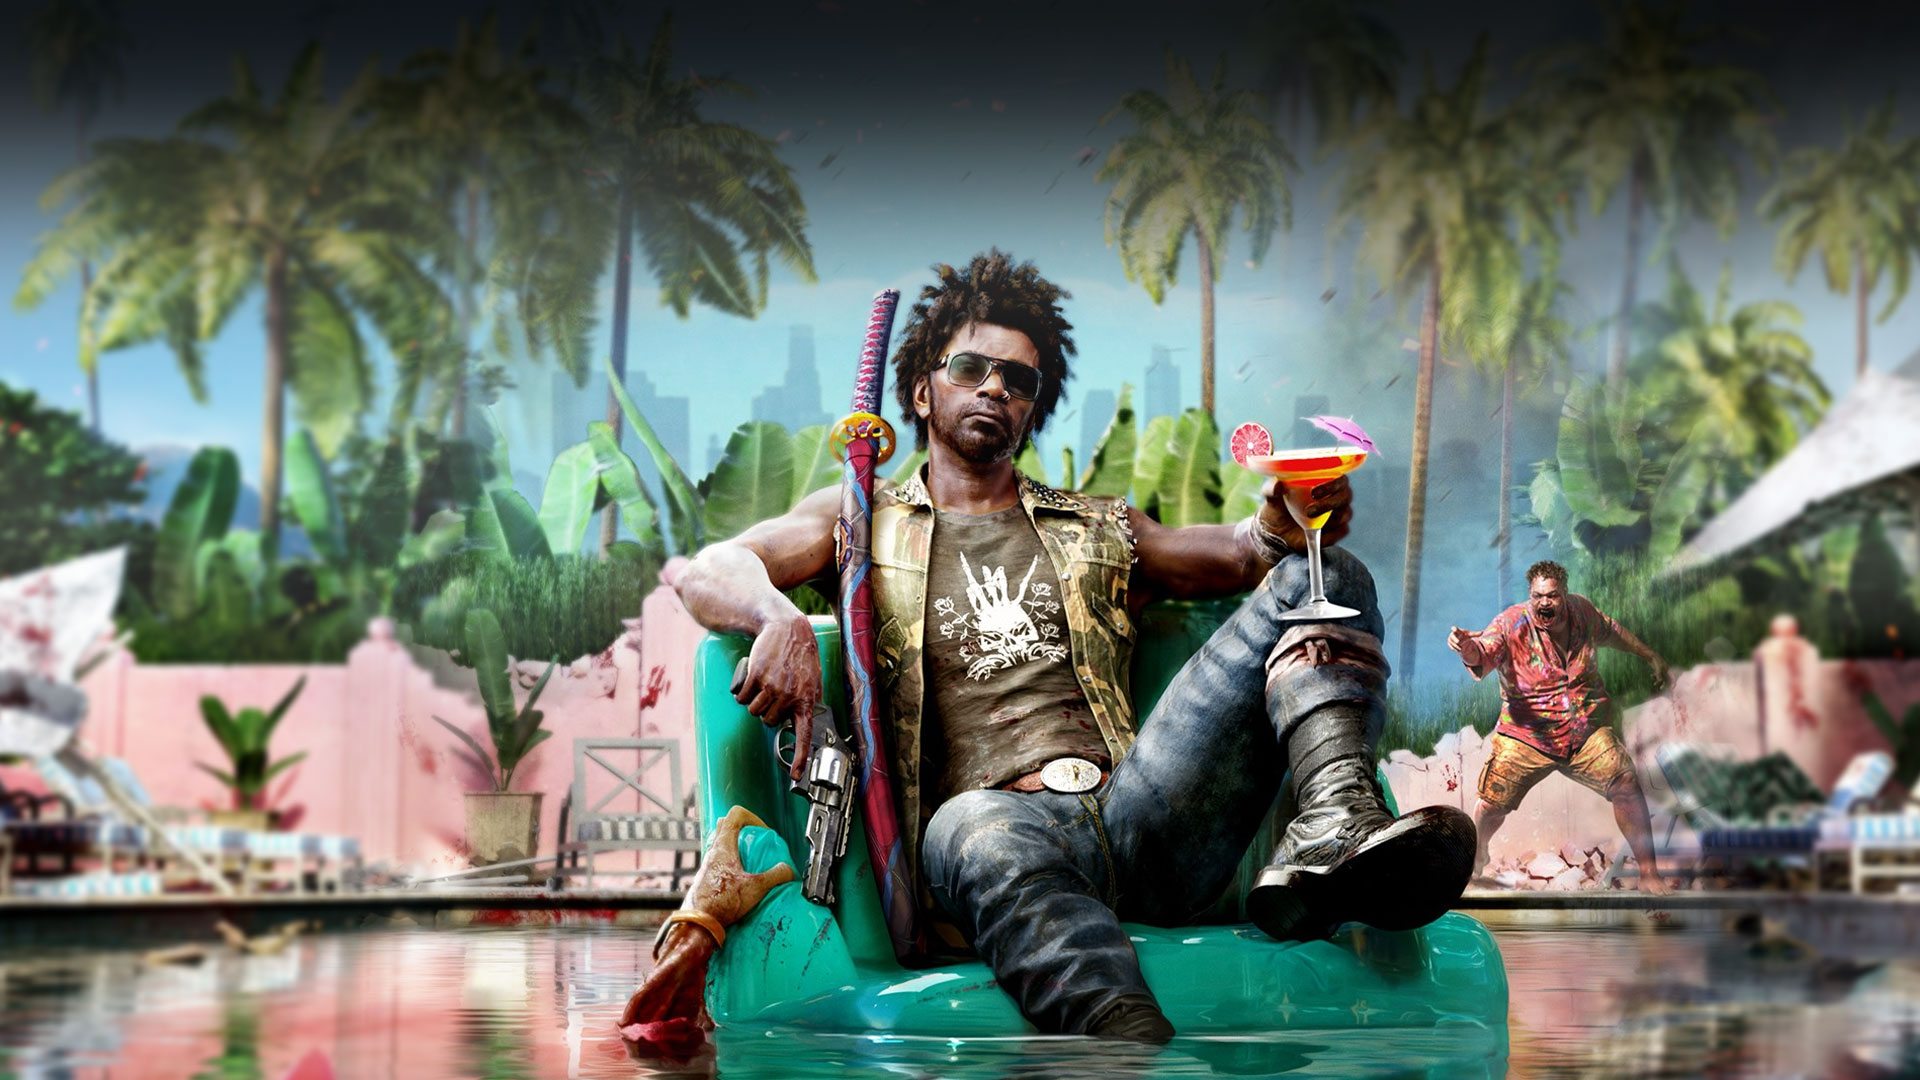 El personaje principal flota en una hamaca inflable con sus armas y un martini. Tiene un zombi detrás que señala mientras una mano emerge de la piscina para agarrar su asiento.